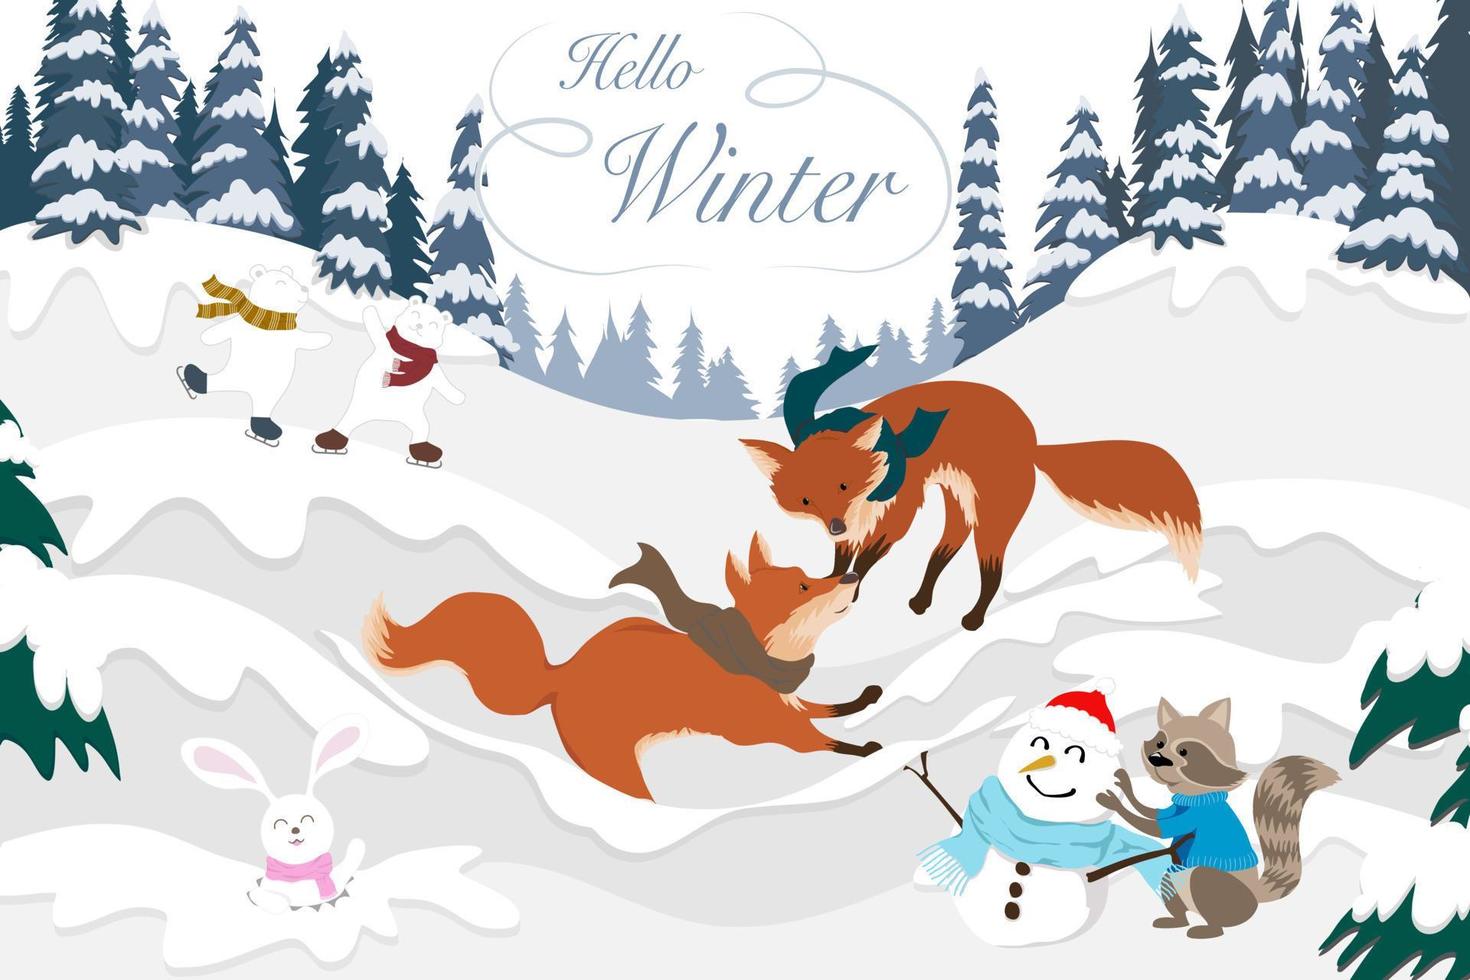 dessin vectoriel de carte postale de la saison hivernale, paysage de deux renards bruns jouant sur la montagne recouverte de neige blanche avec raton laveur, bonhomme de neige, lapin, ours, pin bleu sur fond